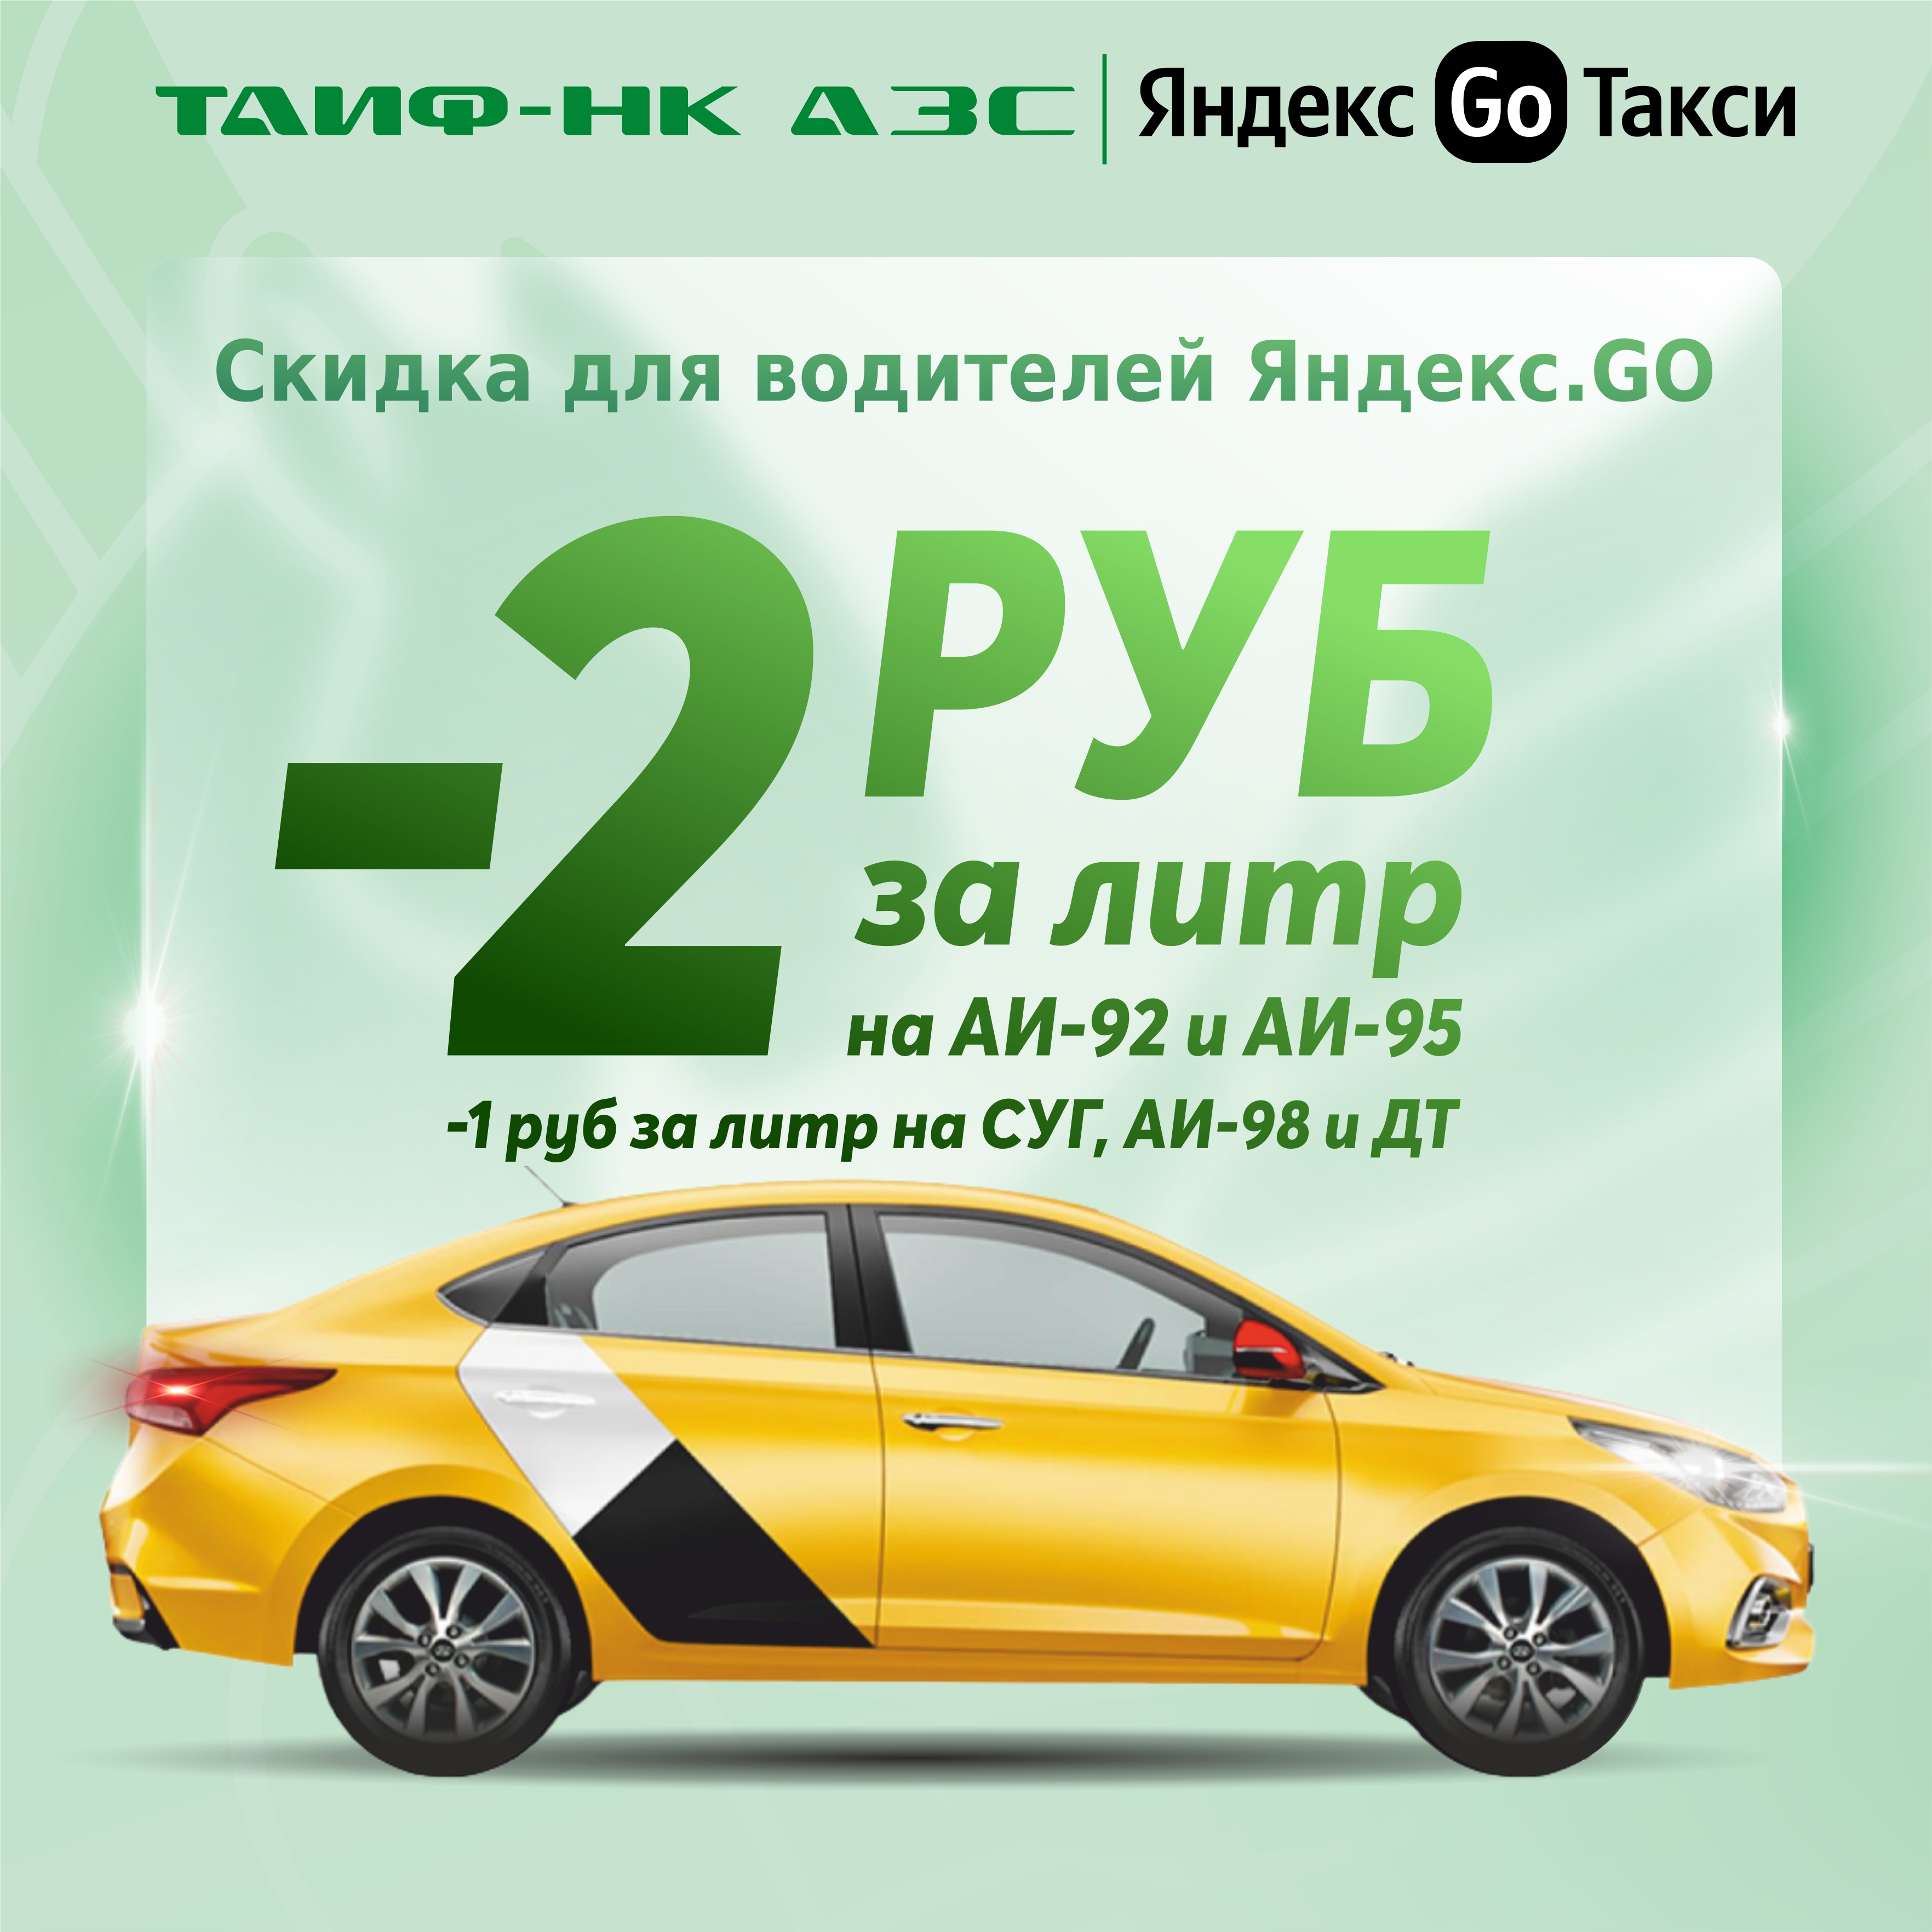 Осенние скидки для водителей "Яндекс.GO"